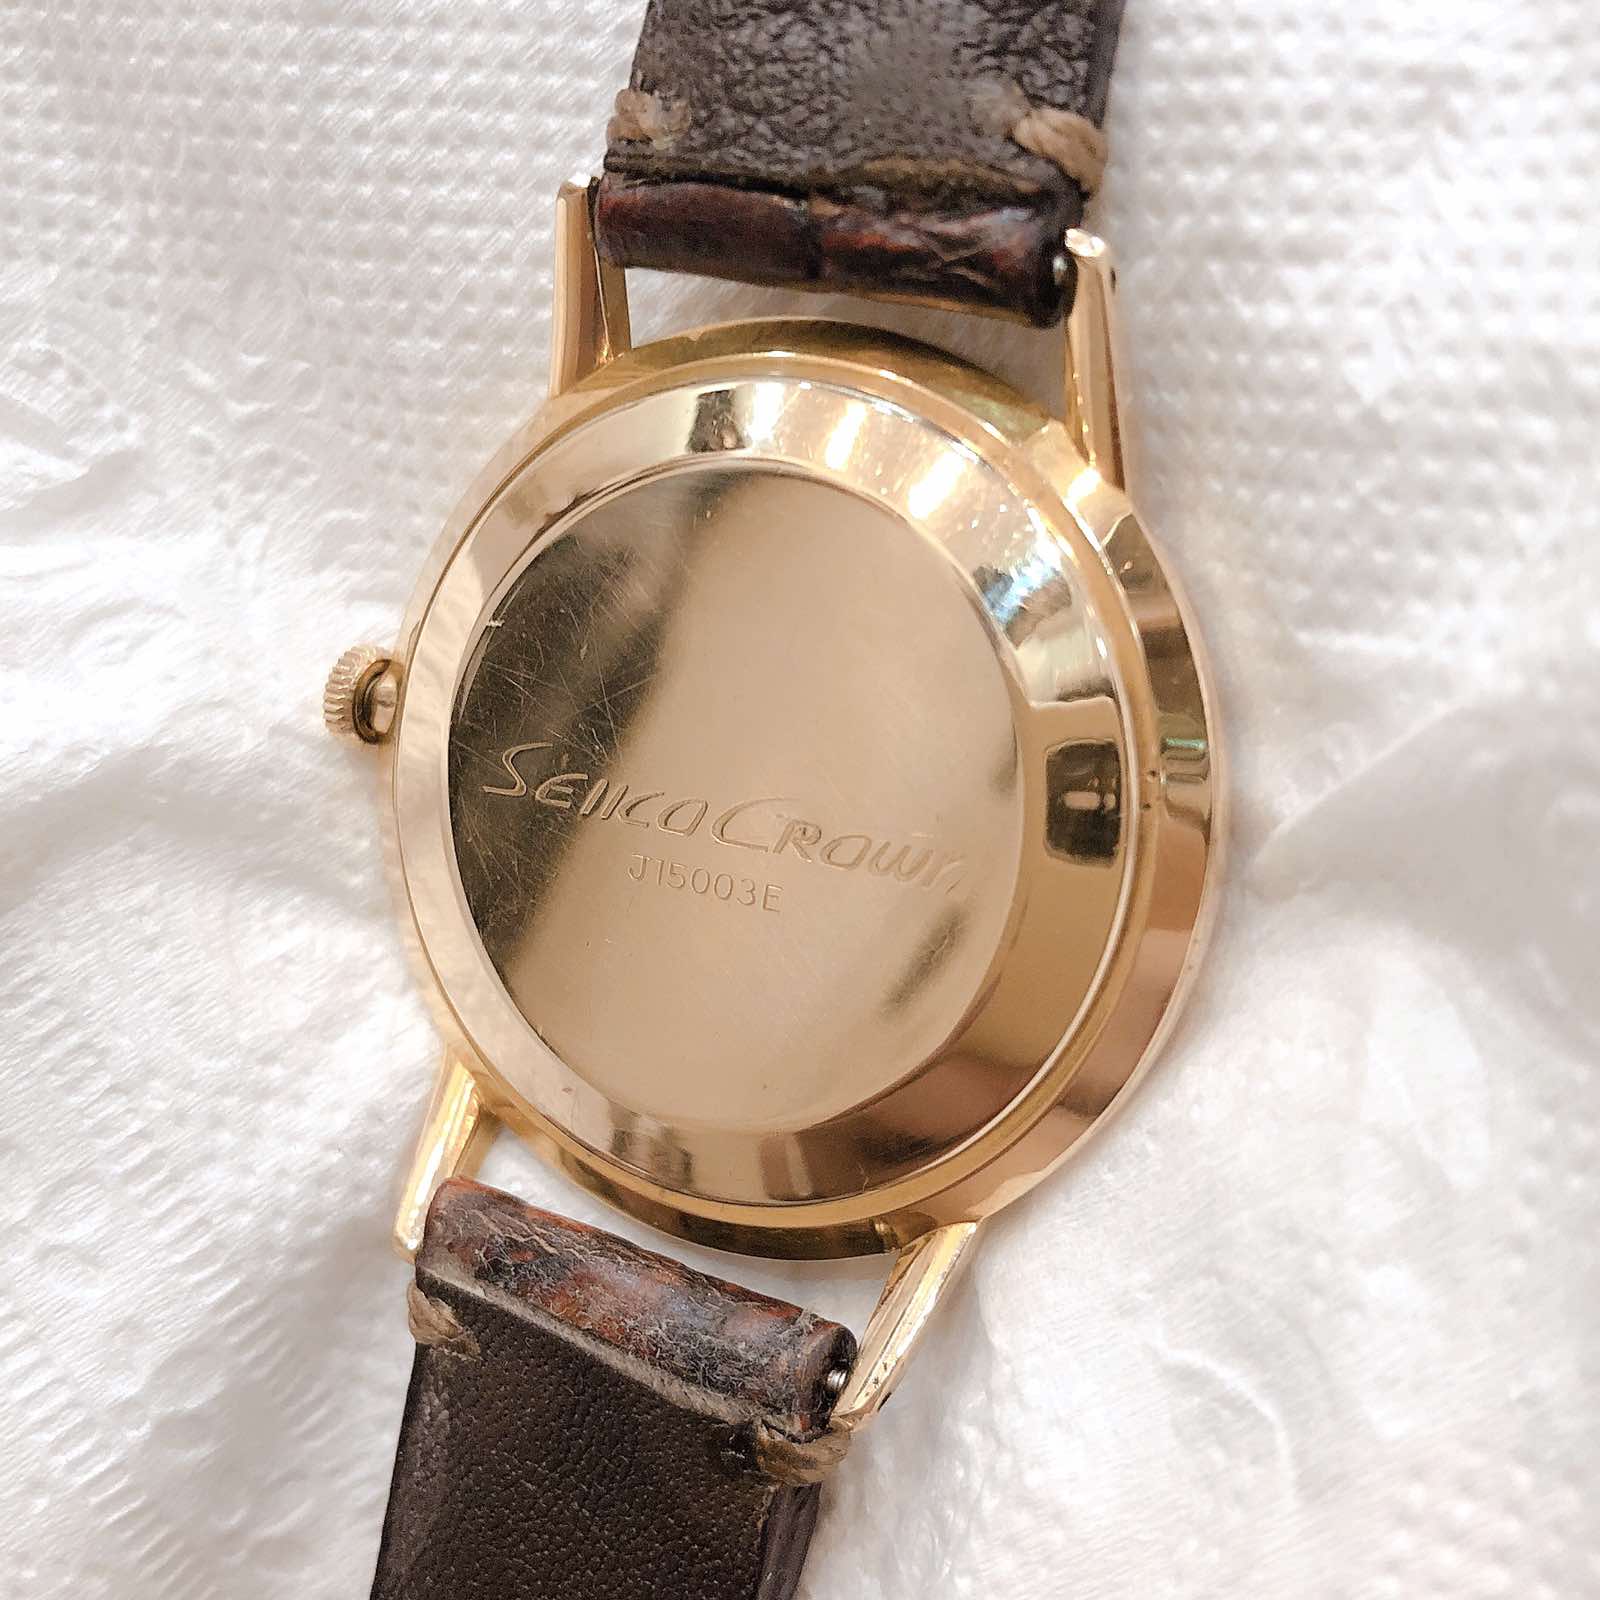 Đồng hồ cổ Seiko Crown kim đĩa lên dây bọc vàng 14k goldfilled nhật bản